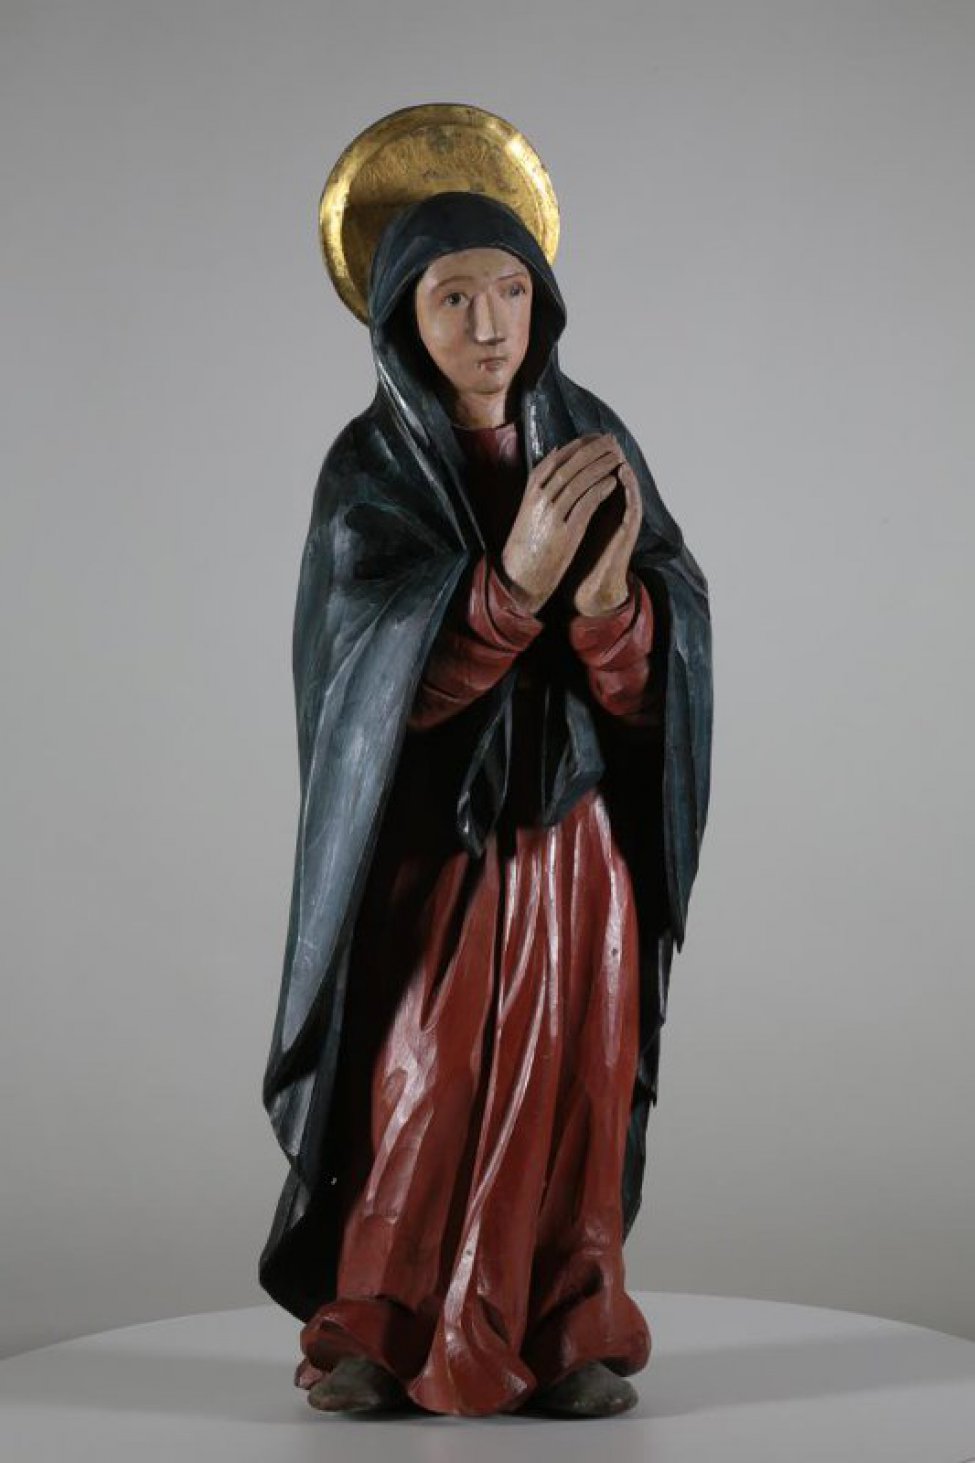 Изображена со сложенными руками и направленными влево, к кресту. На ней красный гиматий и синий хитон.